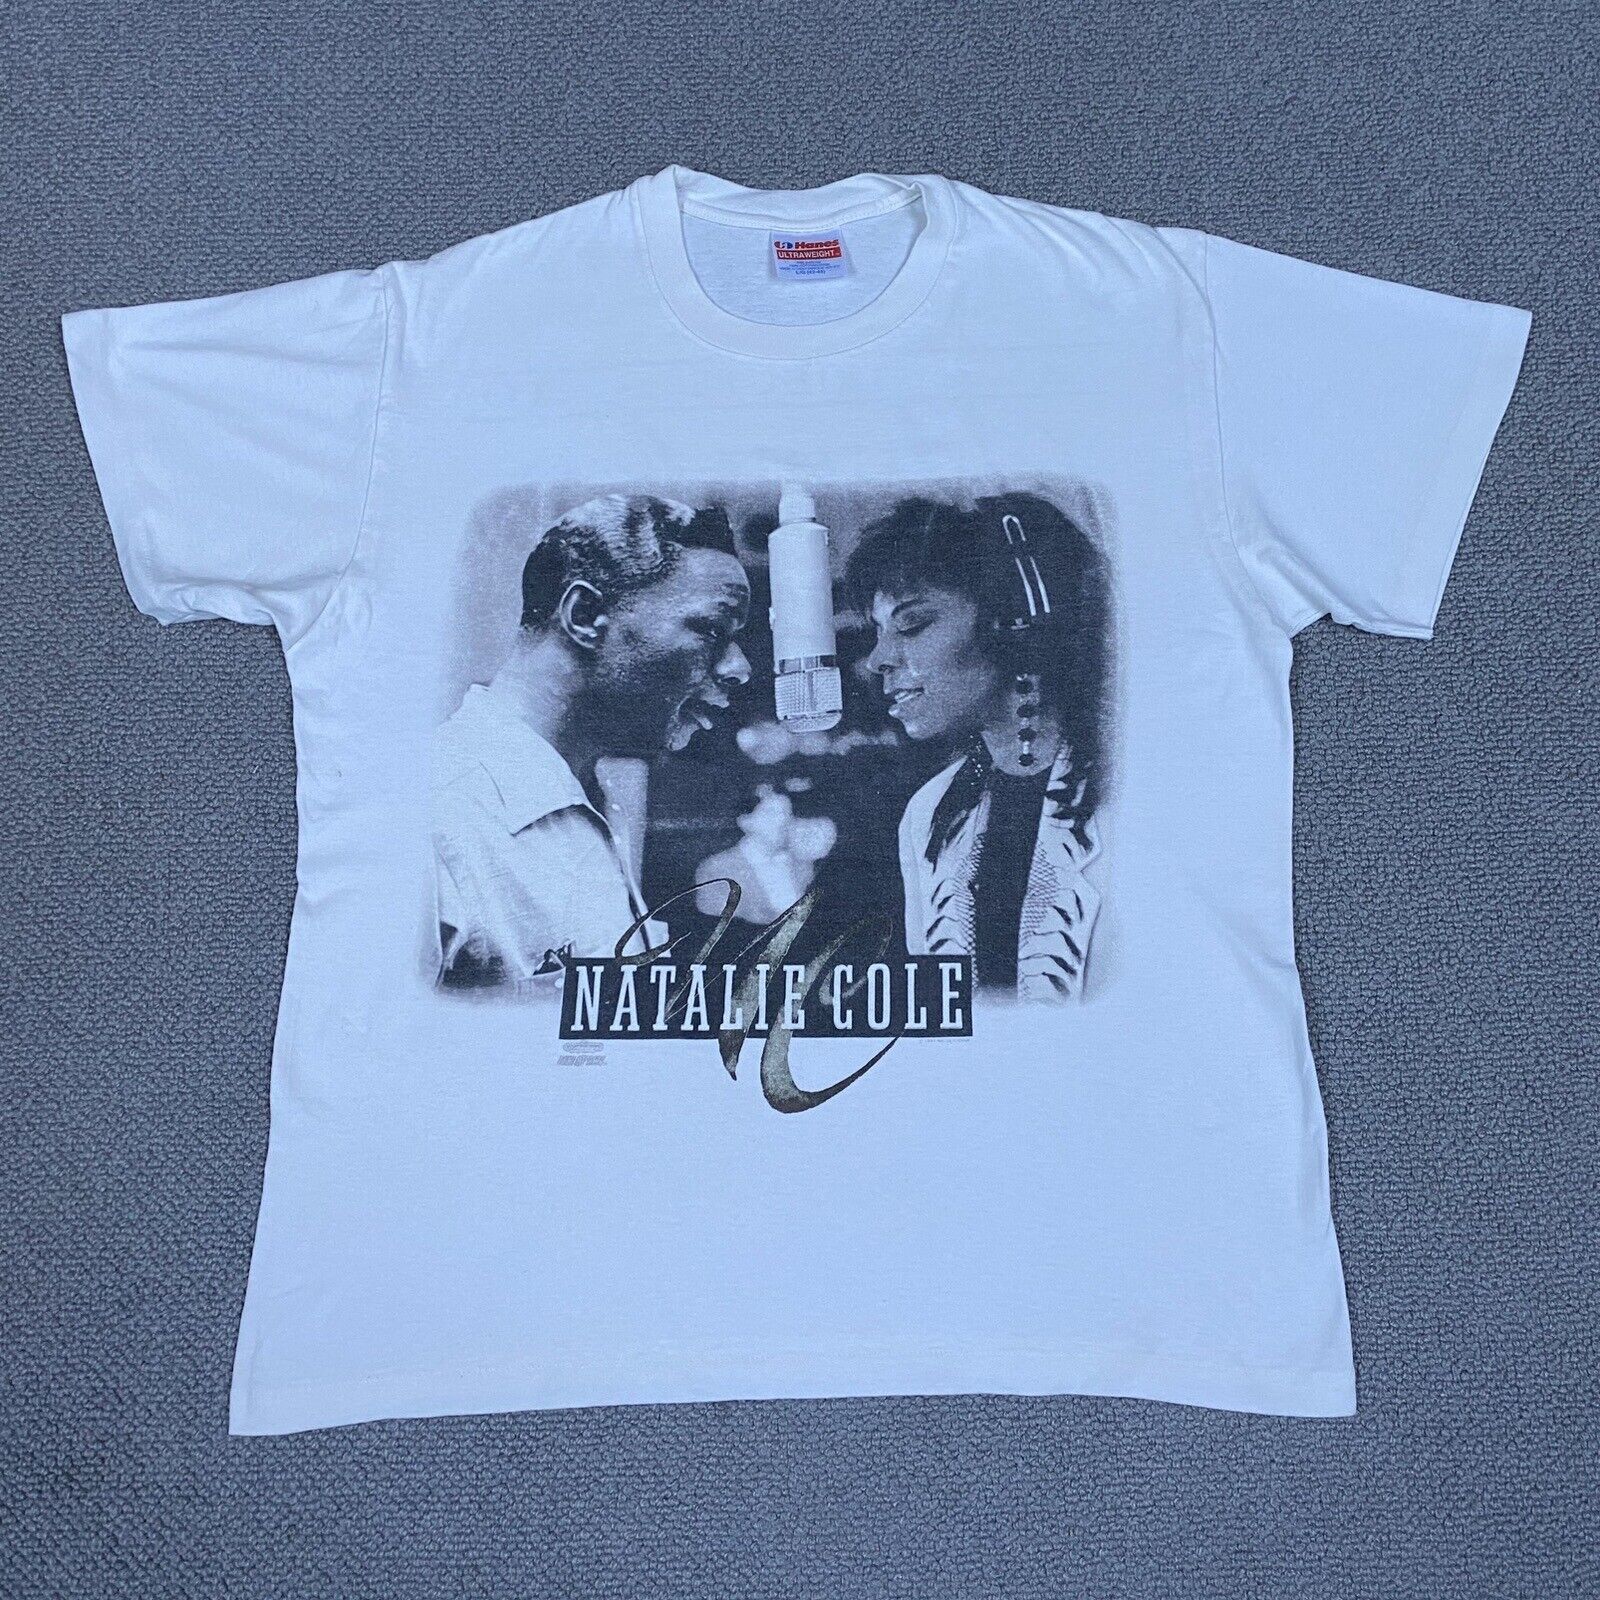 NATALIE COLE T Shirt Mens Medium White Unforgettable Tour Vintage 1991 Nat King